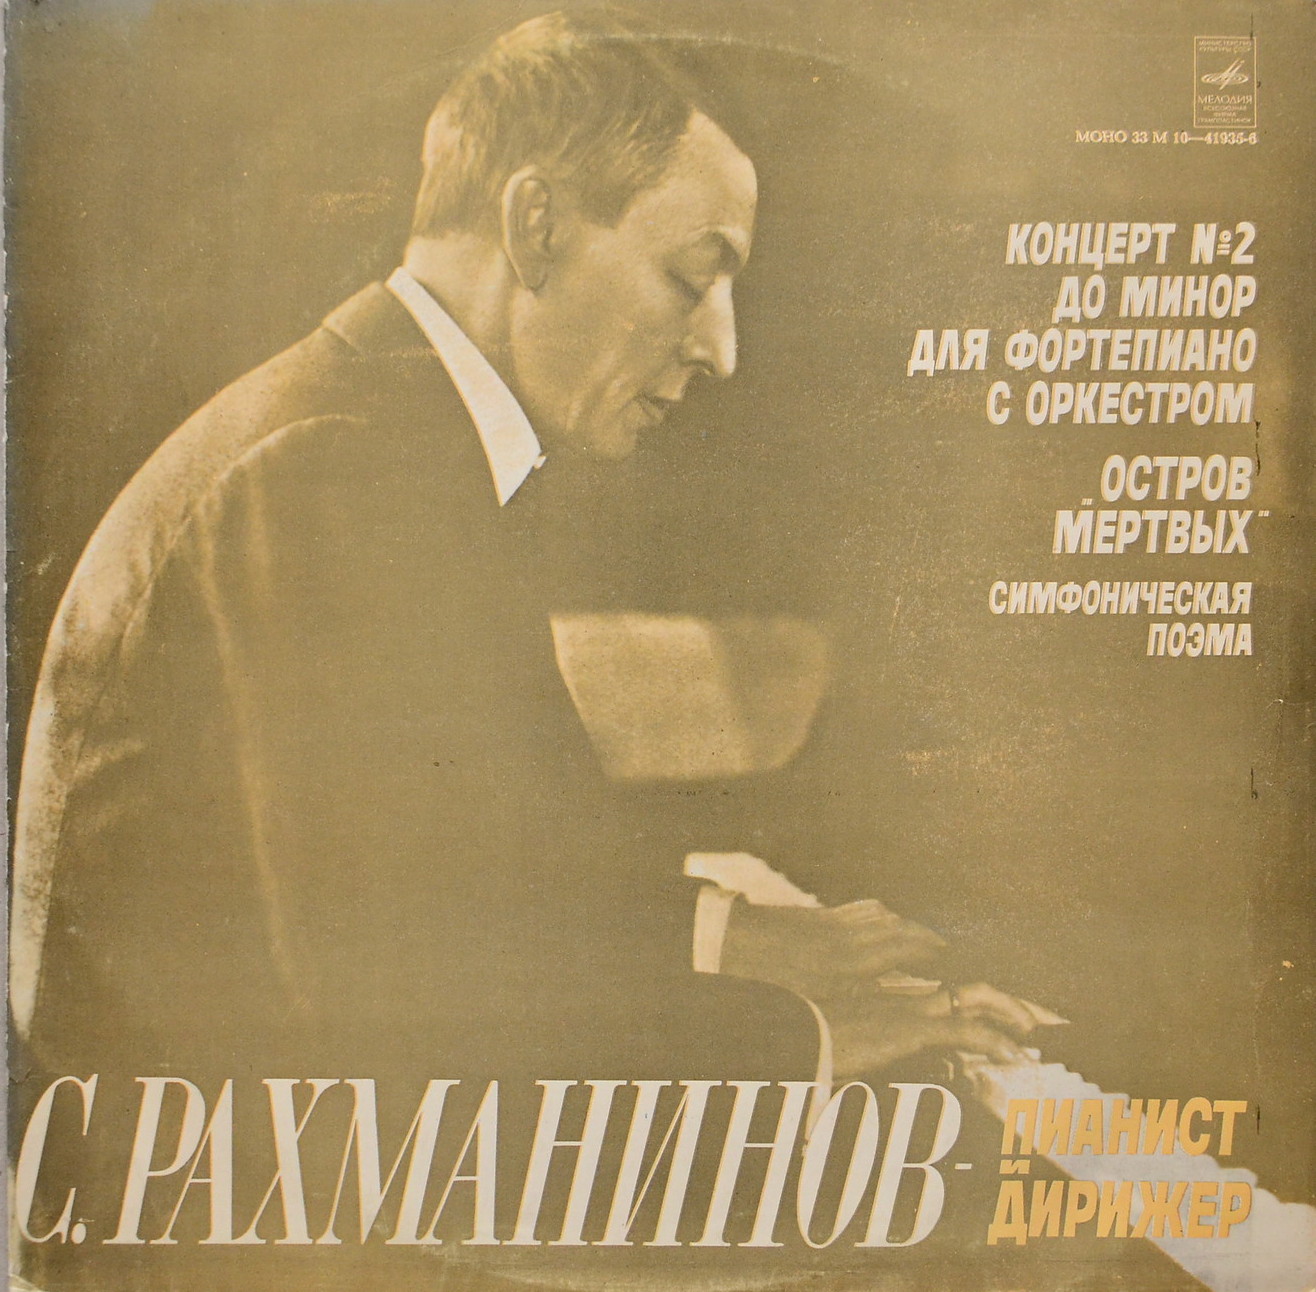 С. РАХМАНИНОВ - Пианист и дирижер